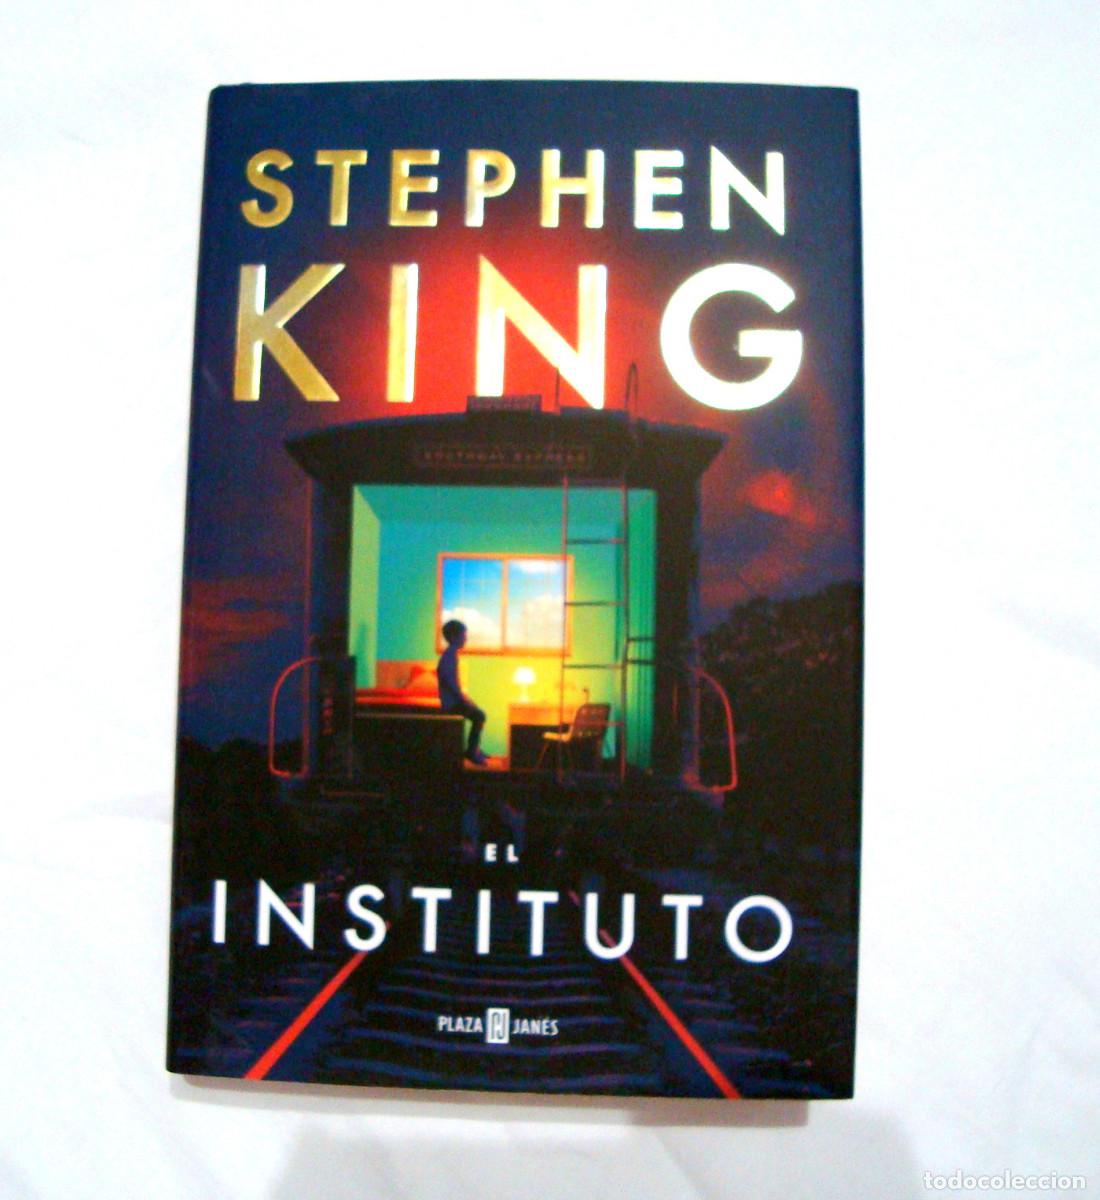 LIBRO EL INSTITUTO STEPHEN KING 2019 - ISBN 9788401022357 - TAPA DURA - MUY  BUEN ESTADO